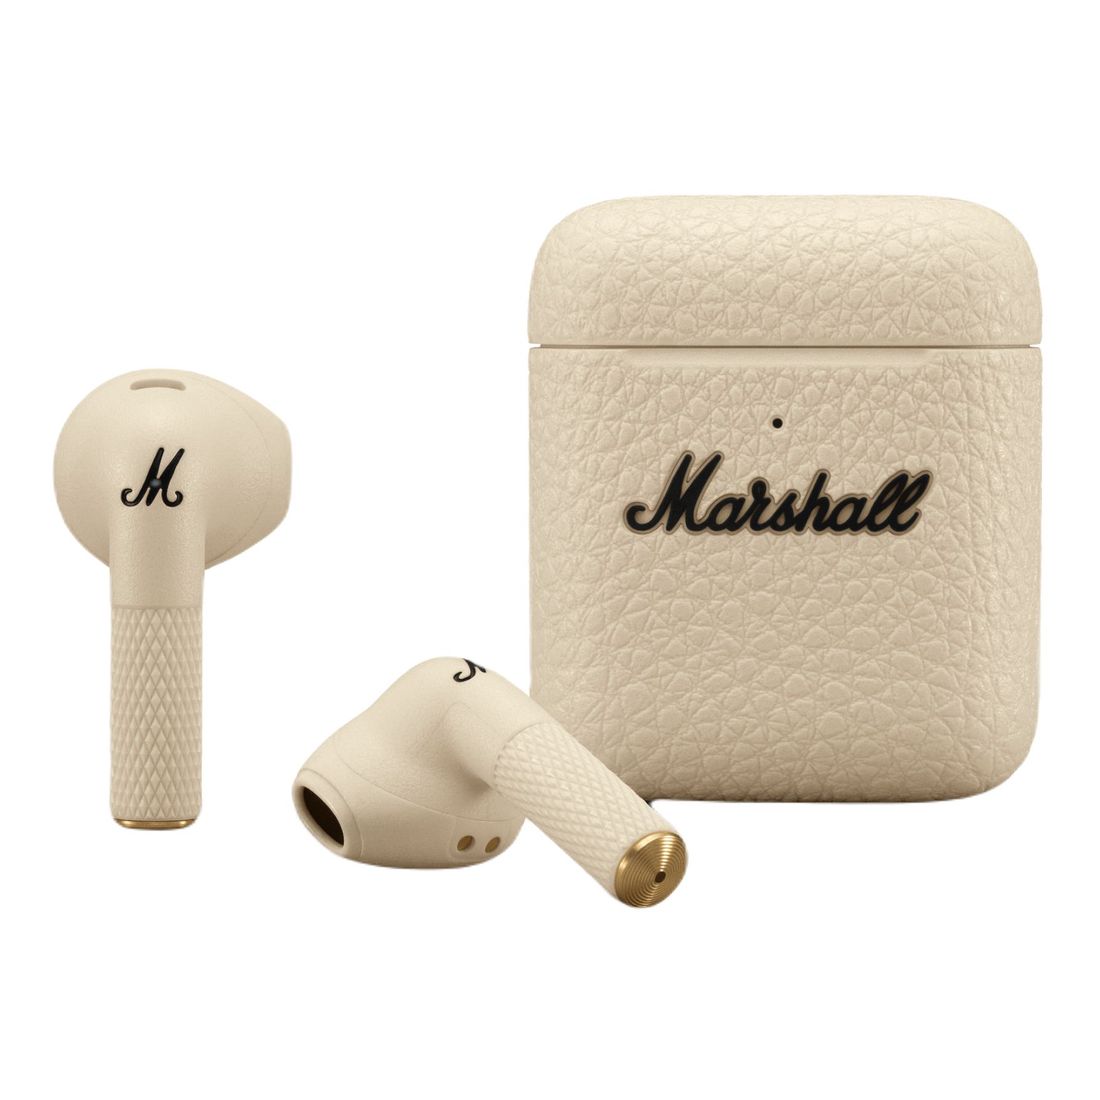 Marshall Minor III True Wireless In-Ear Éditeurs, Maroc